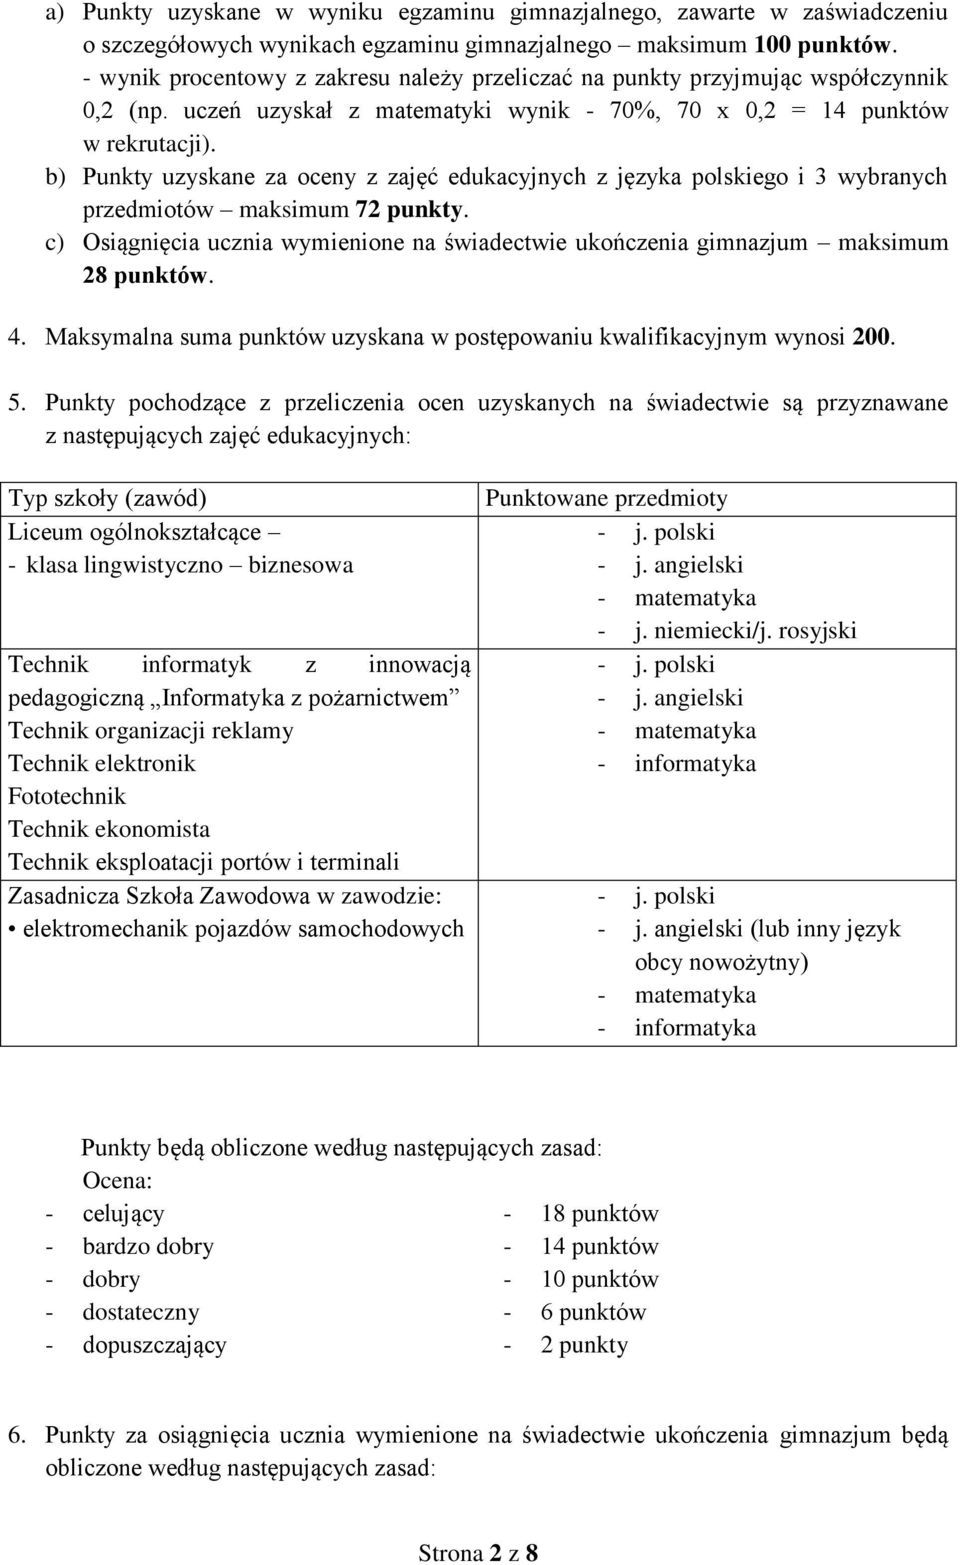 b) Punkty uzyskane za oceny z zajęć edukacyjnych z języka polskiego i 3 wybranych przedmiotów maksimum 72 punkty.